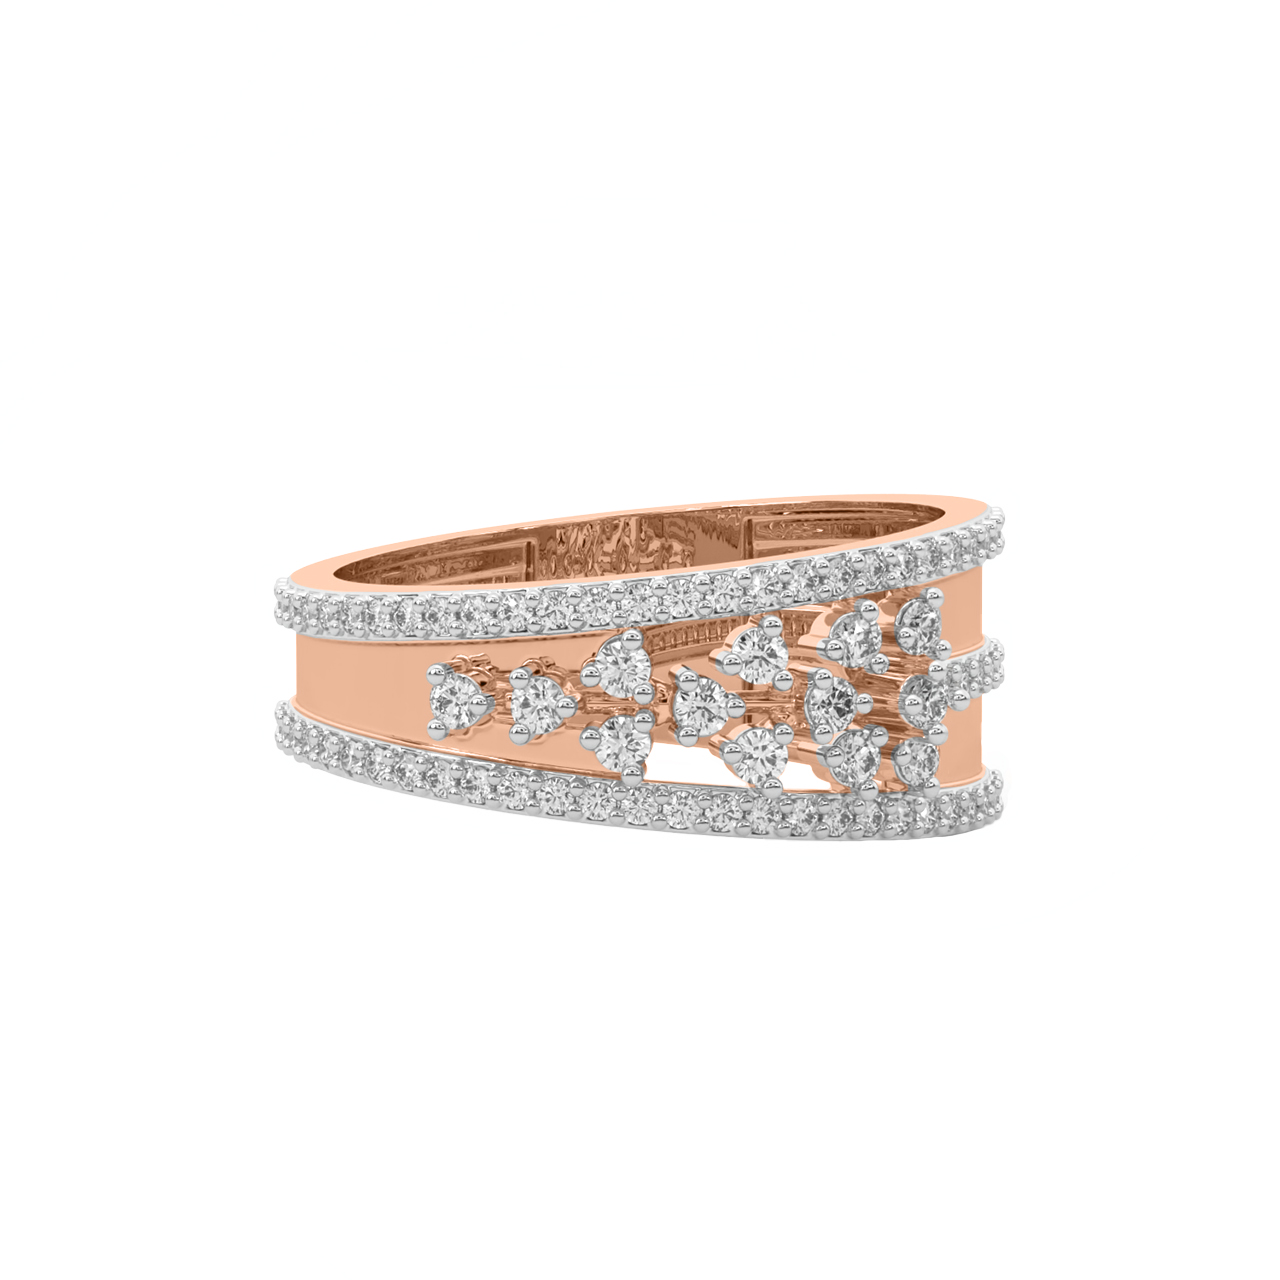 Zaire Round Diamond Engagement Ring